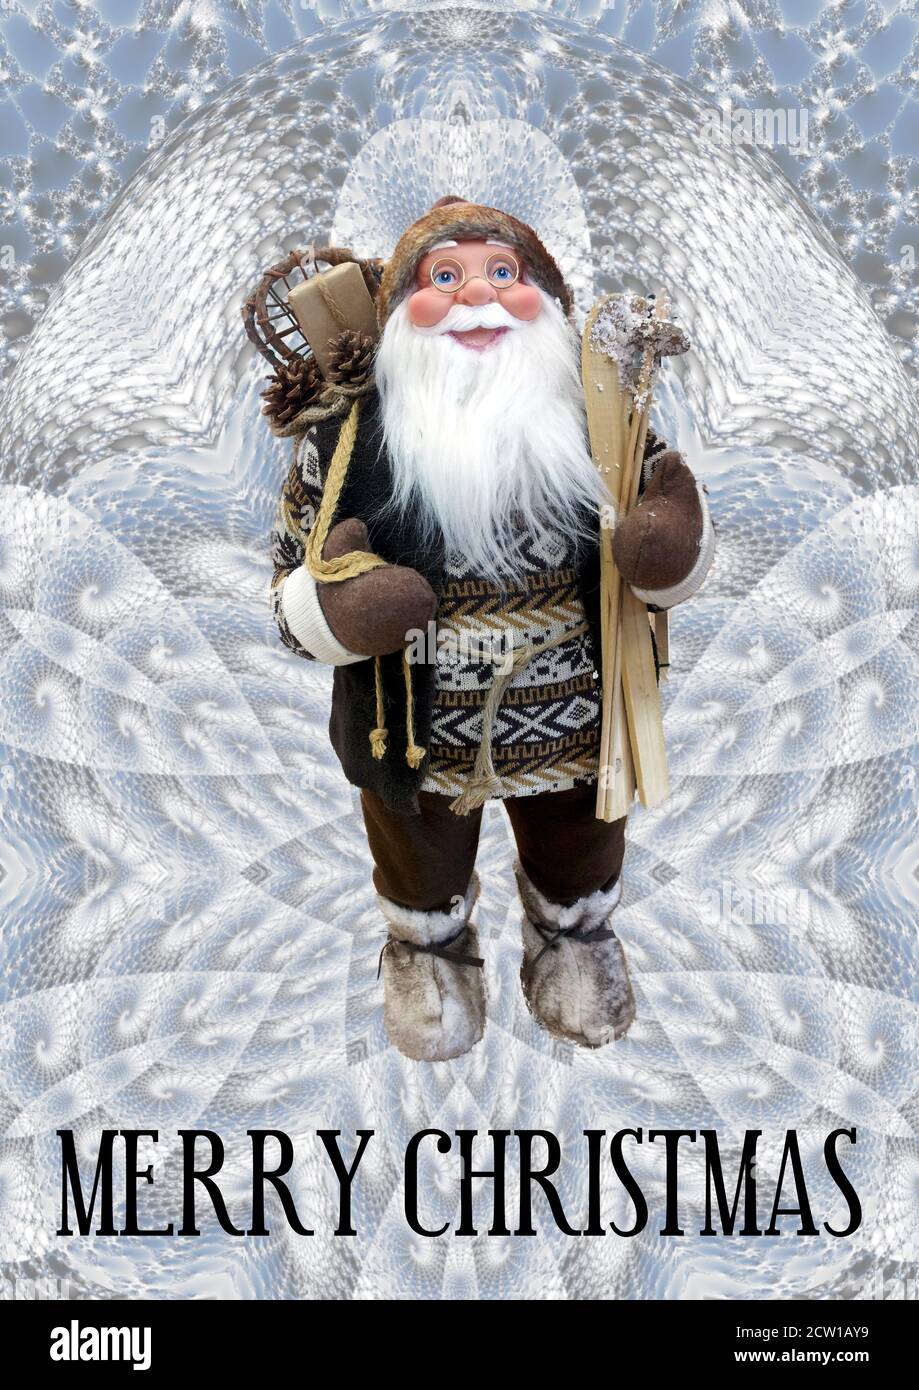 Hier kommt der Weihnachtsmann: Stimmungsvolles, zeitgenössisches Weihnachtsgrüßdesign mit Weihnachtsmann. Stockfoto